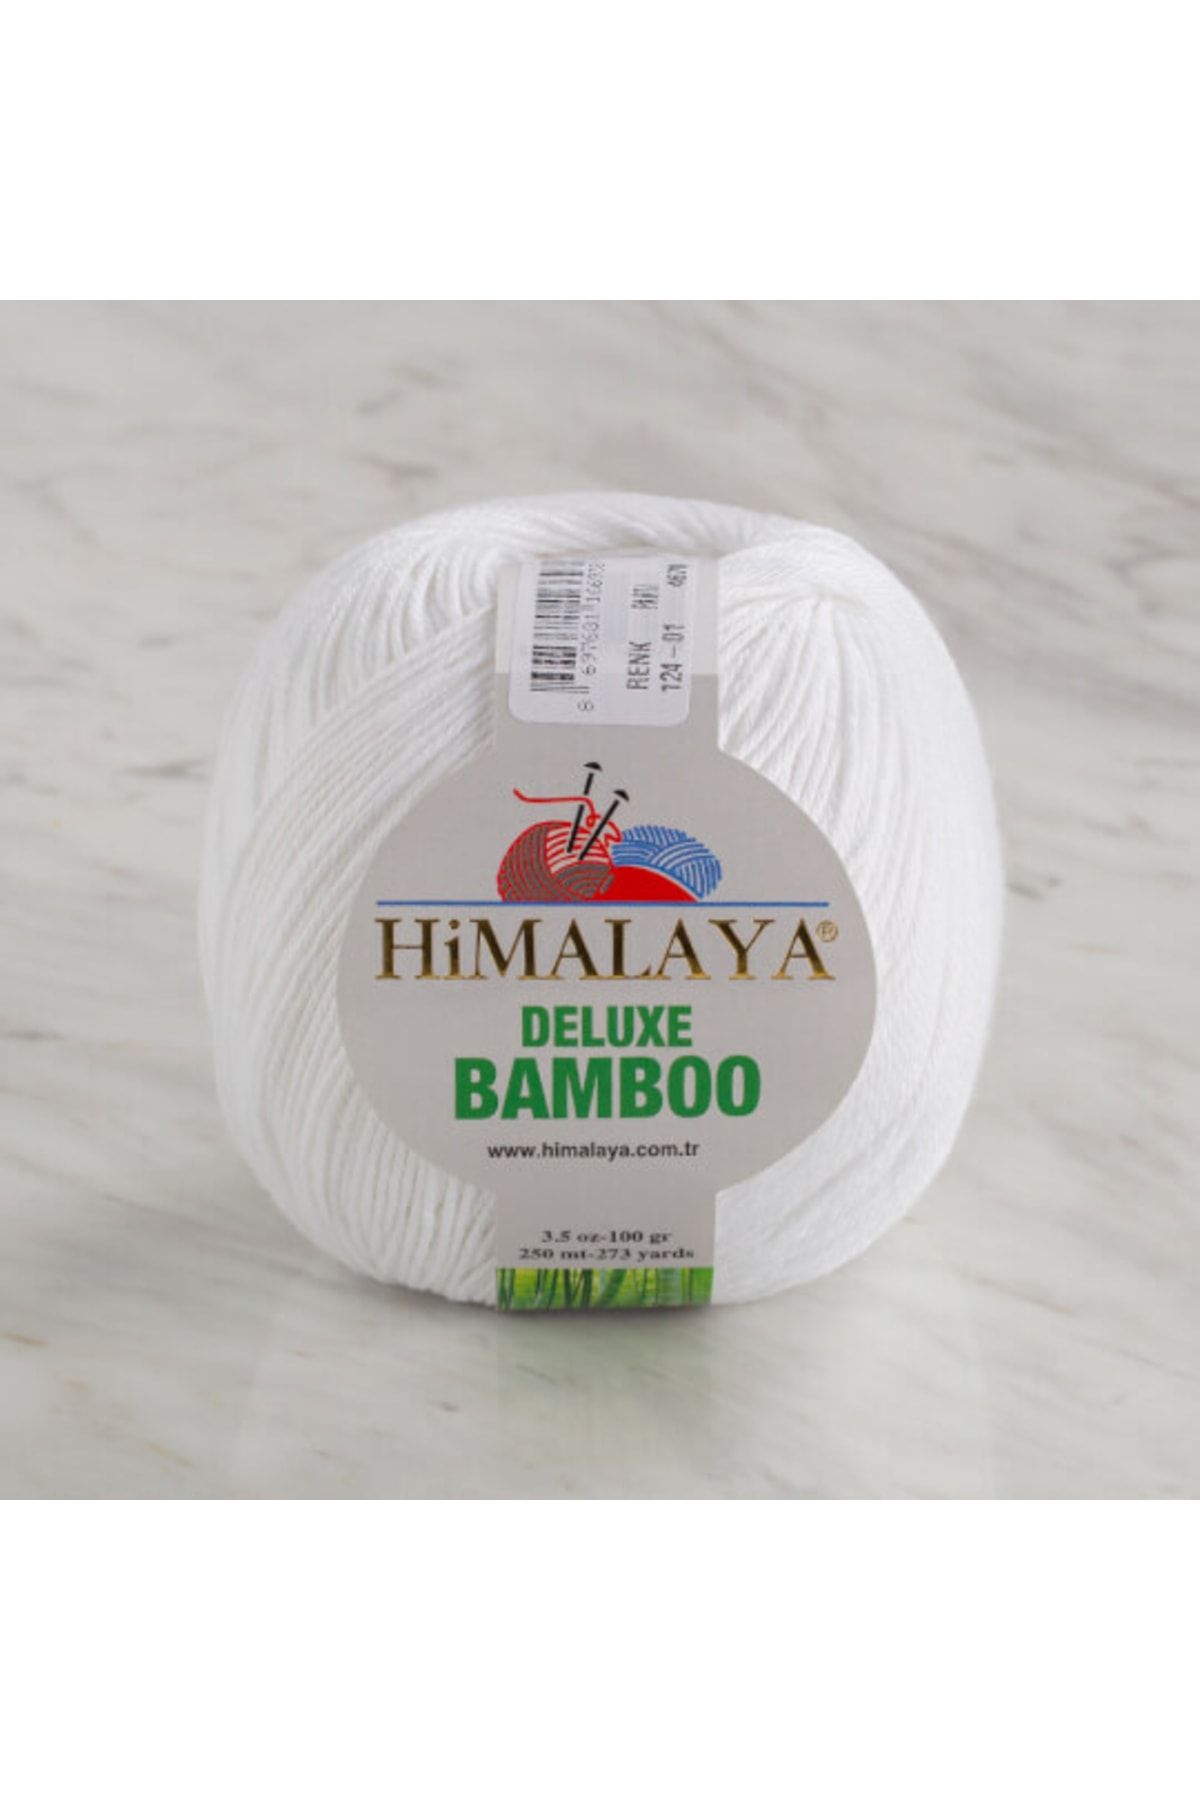 Himalaya HİMALAYA DELUXE BAMBOO 124-01